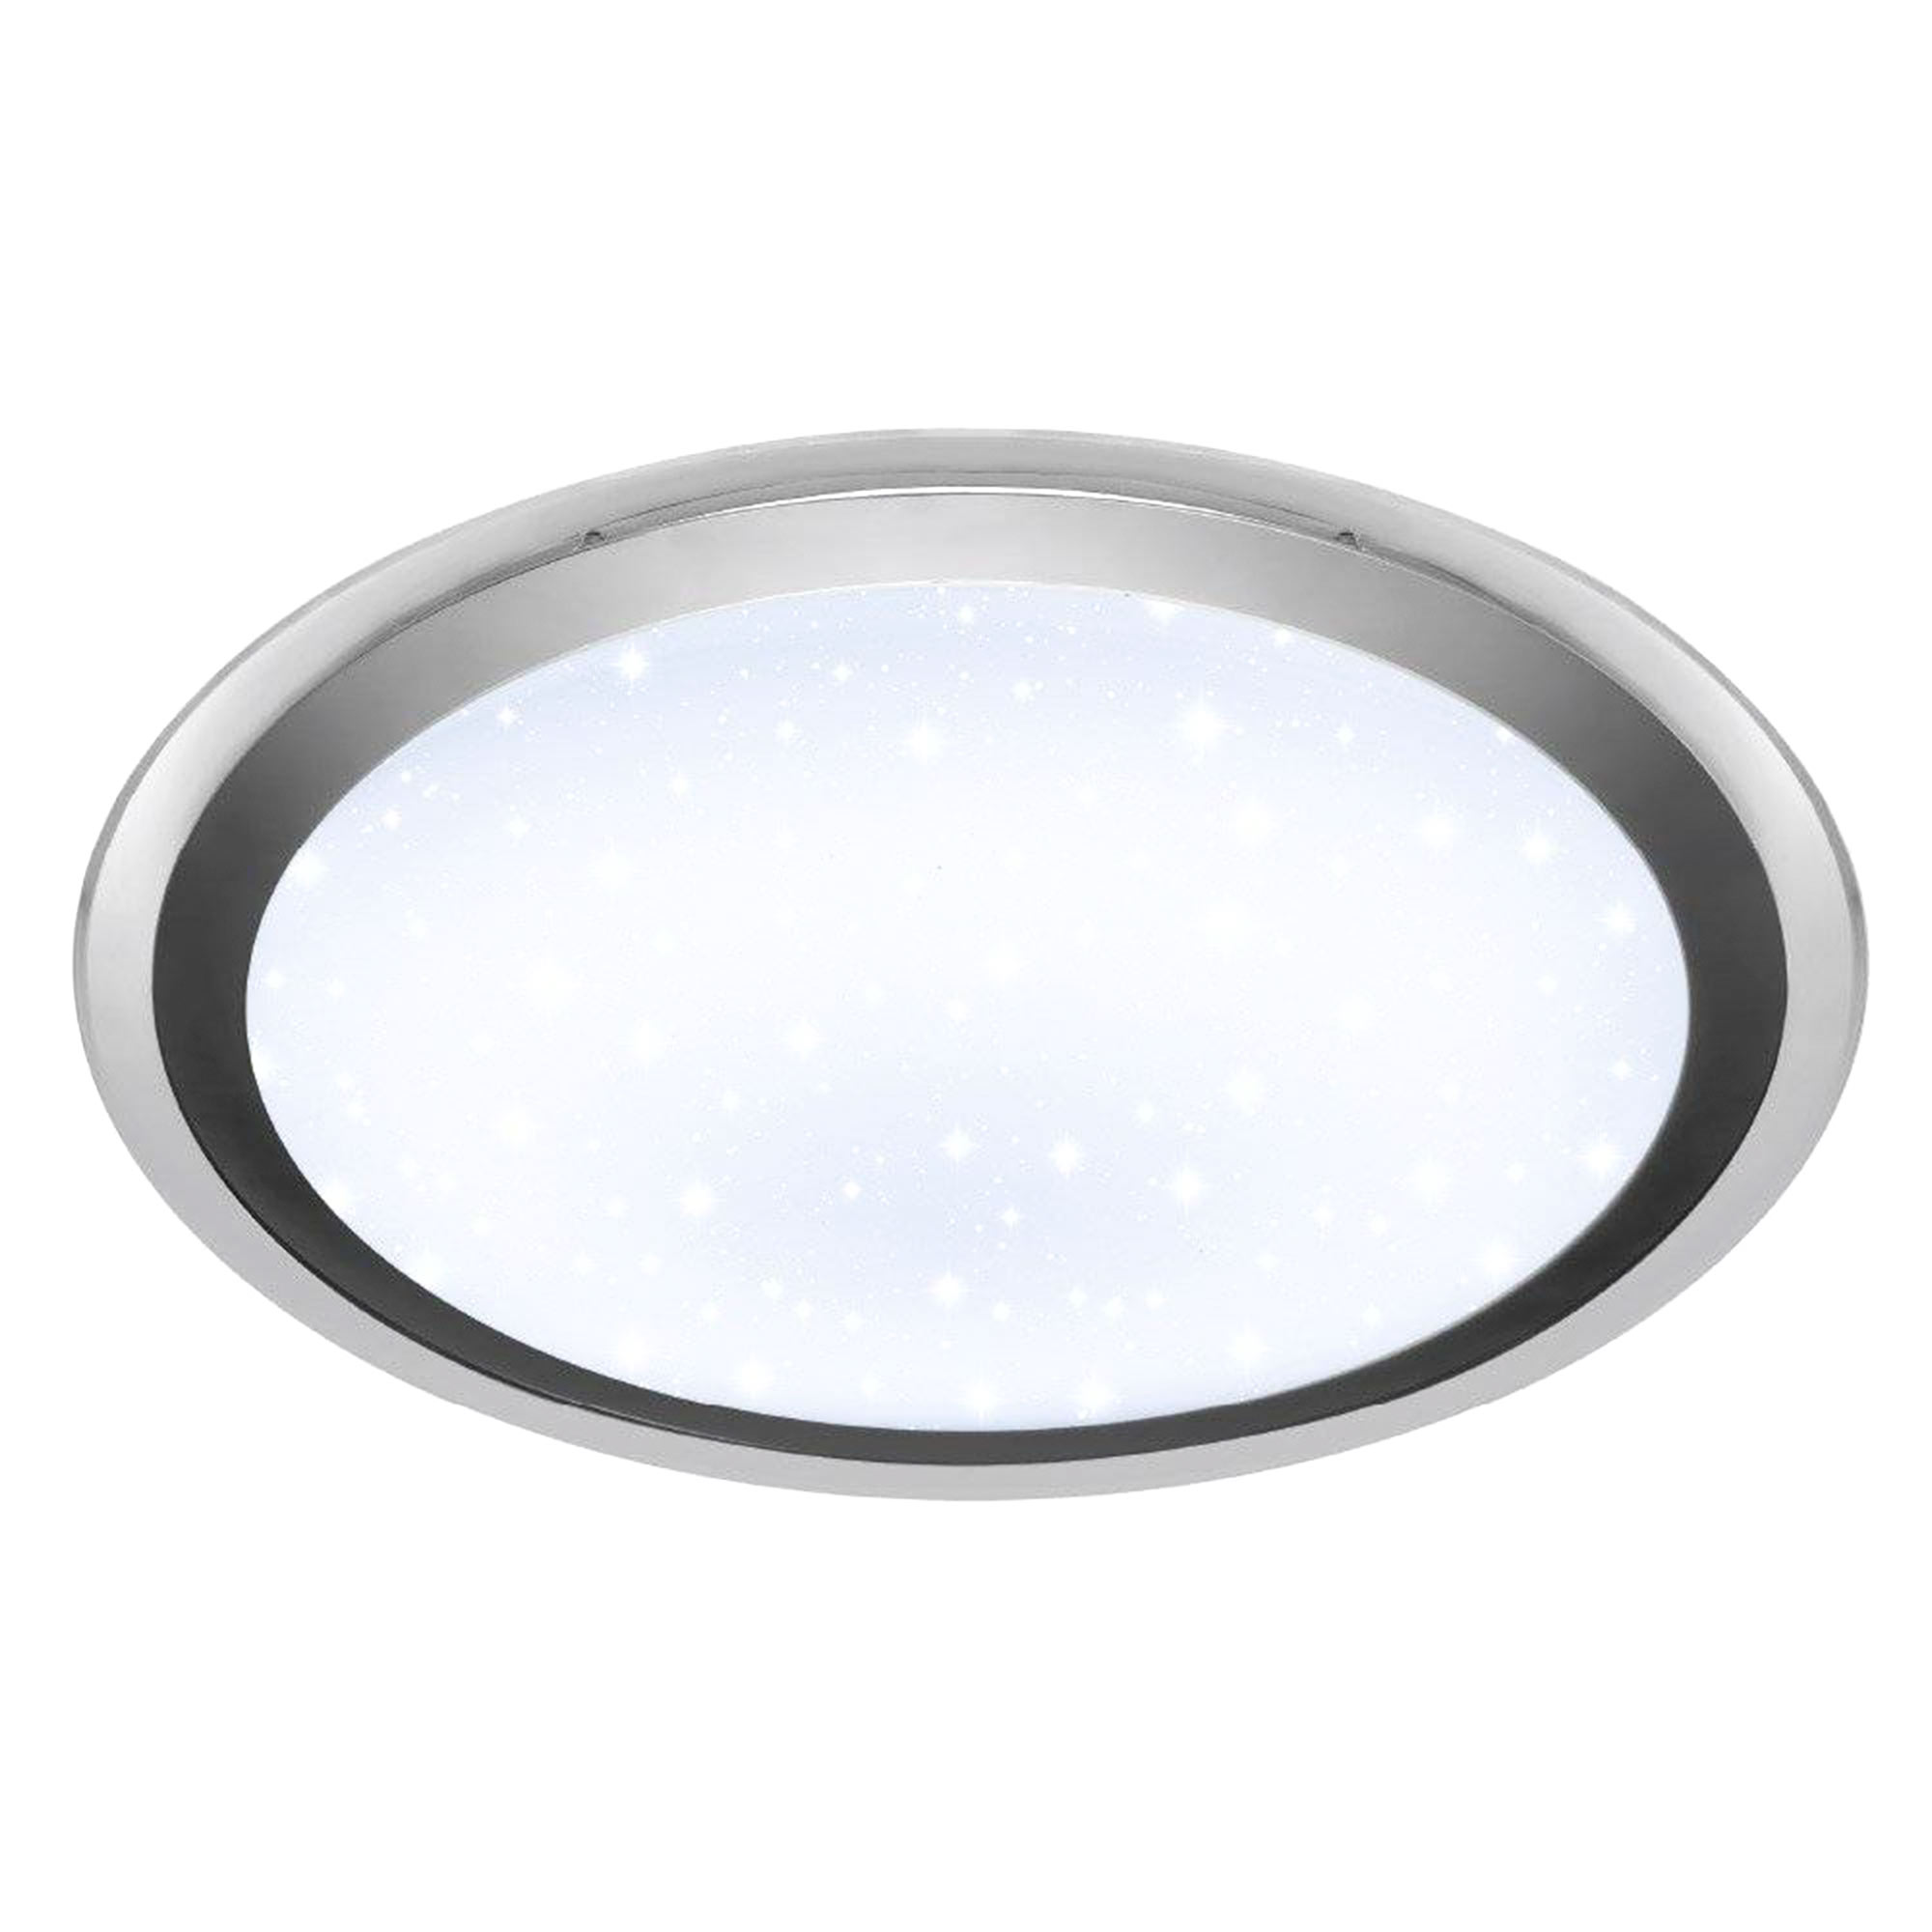 Фото светильники светодиодные для внутреннего освещения: Светильники внутреннего светодиодного освещения - производитель Xlight